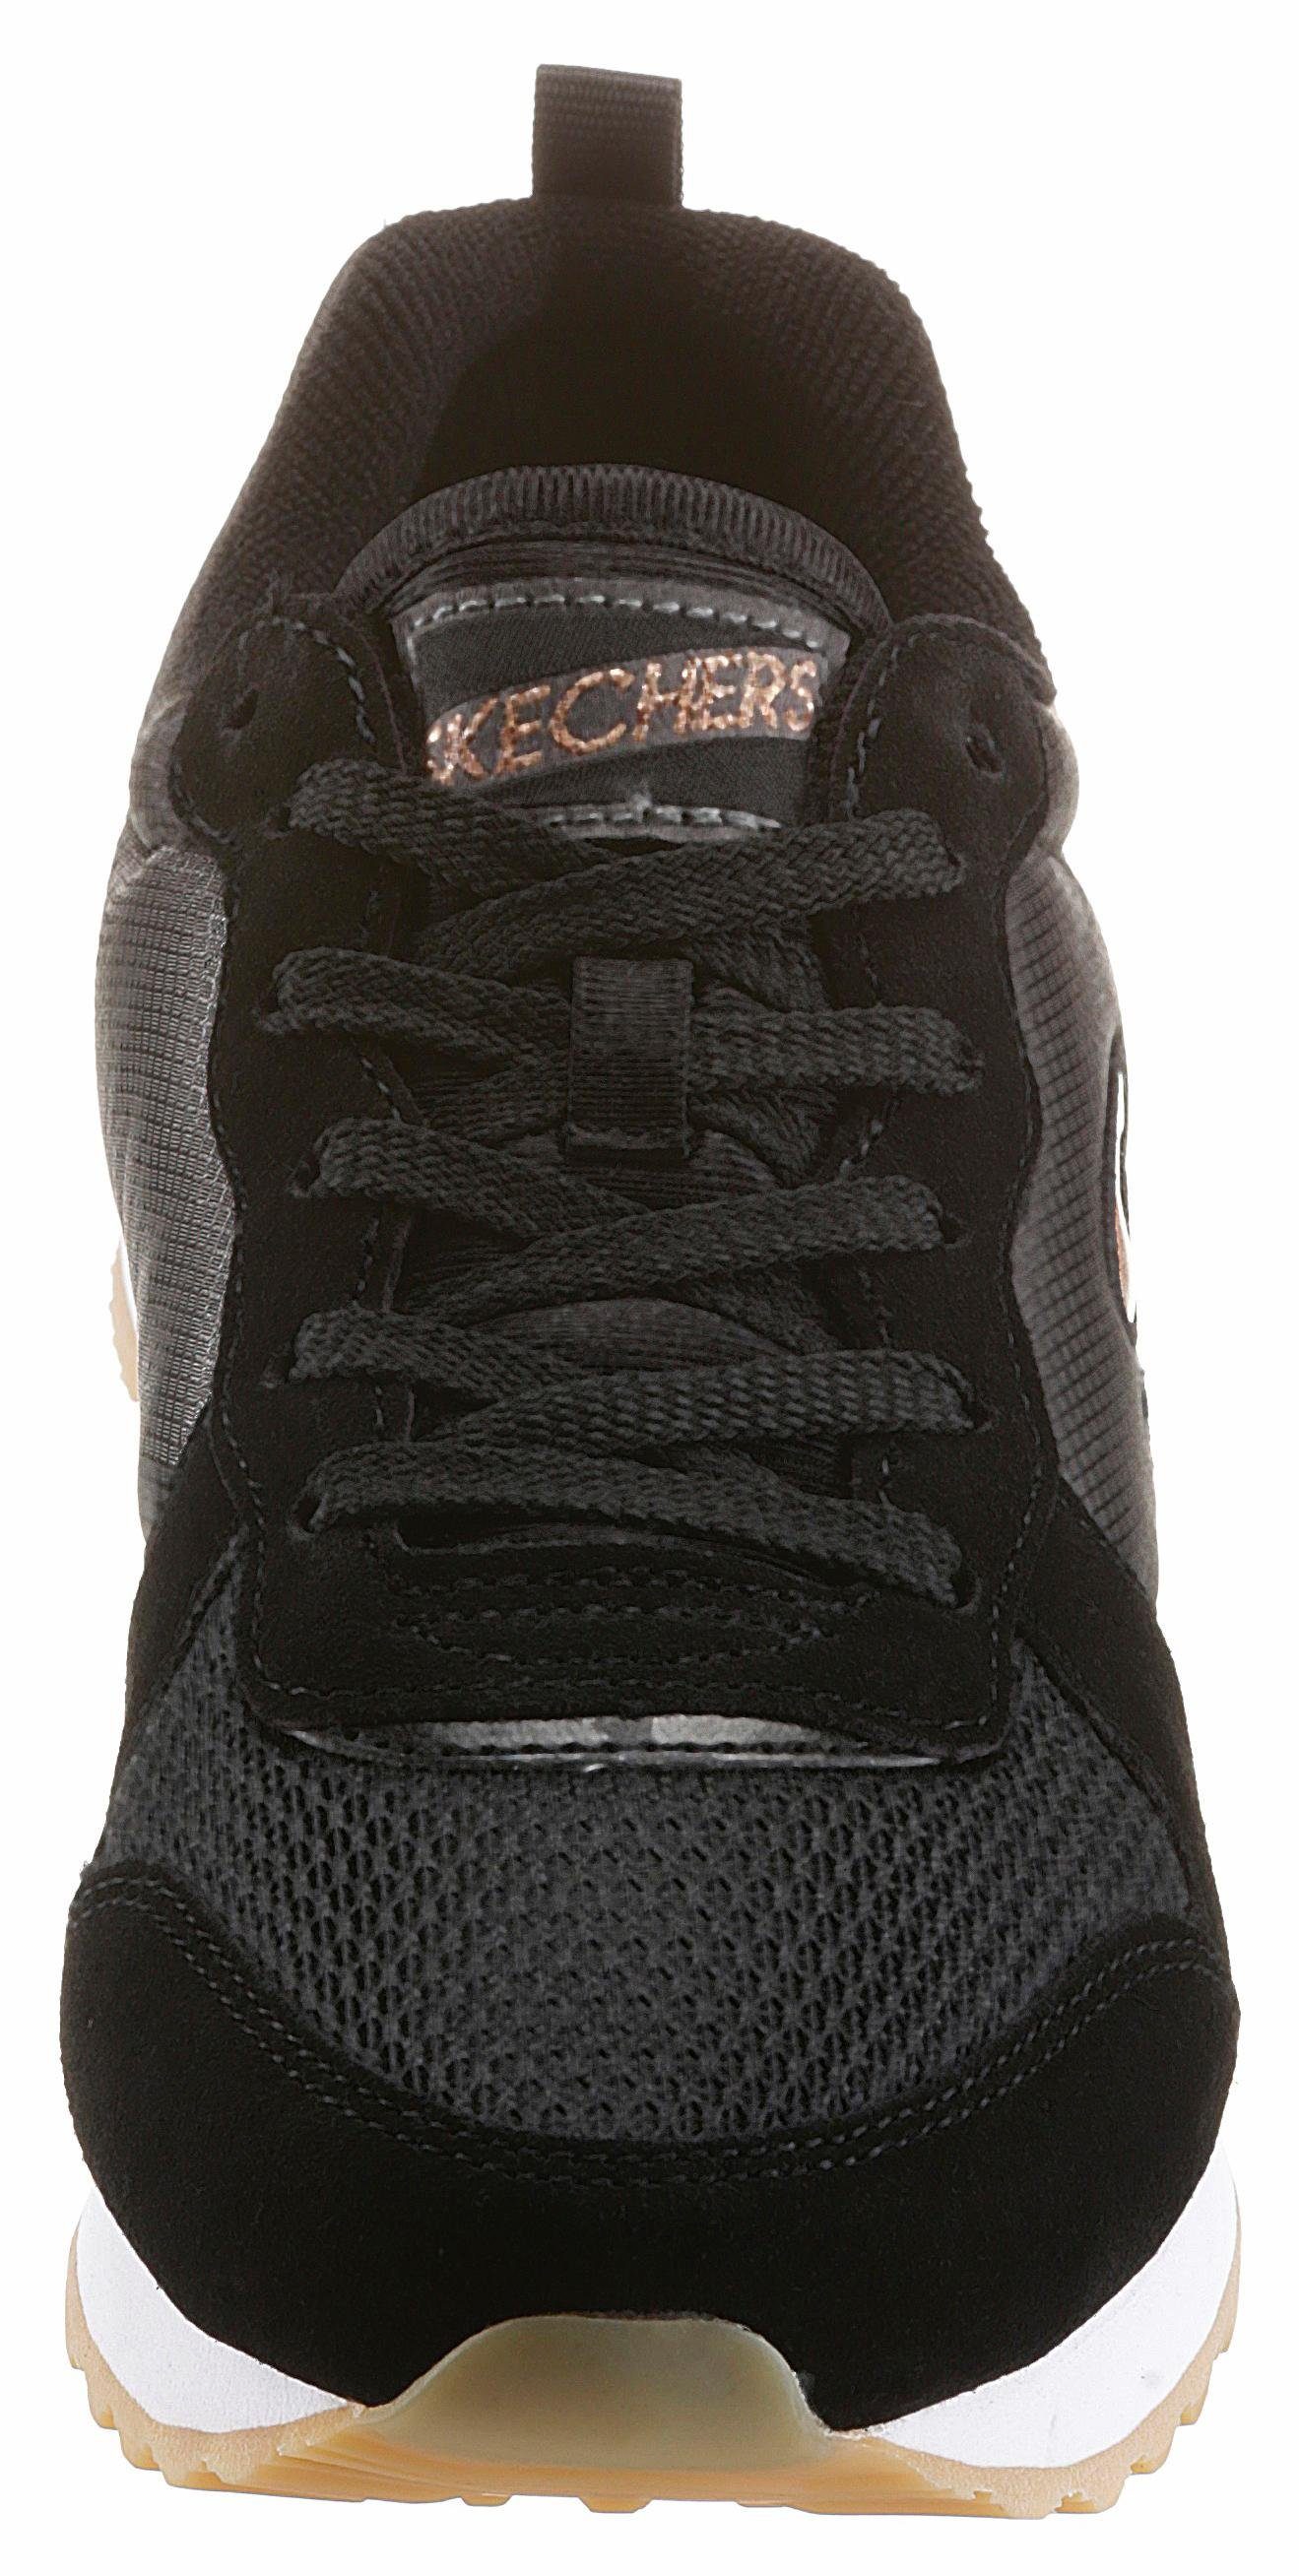 Sneaker - Memory GURL mit 85 GOLDN Foam Ausstattung Skechers schwarz-goldfarben komfortabler OG Air-Cooled